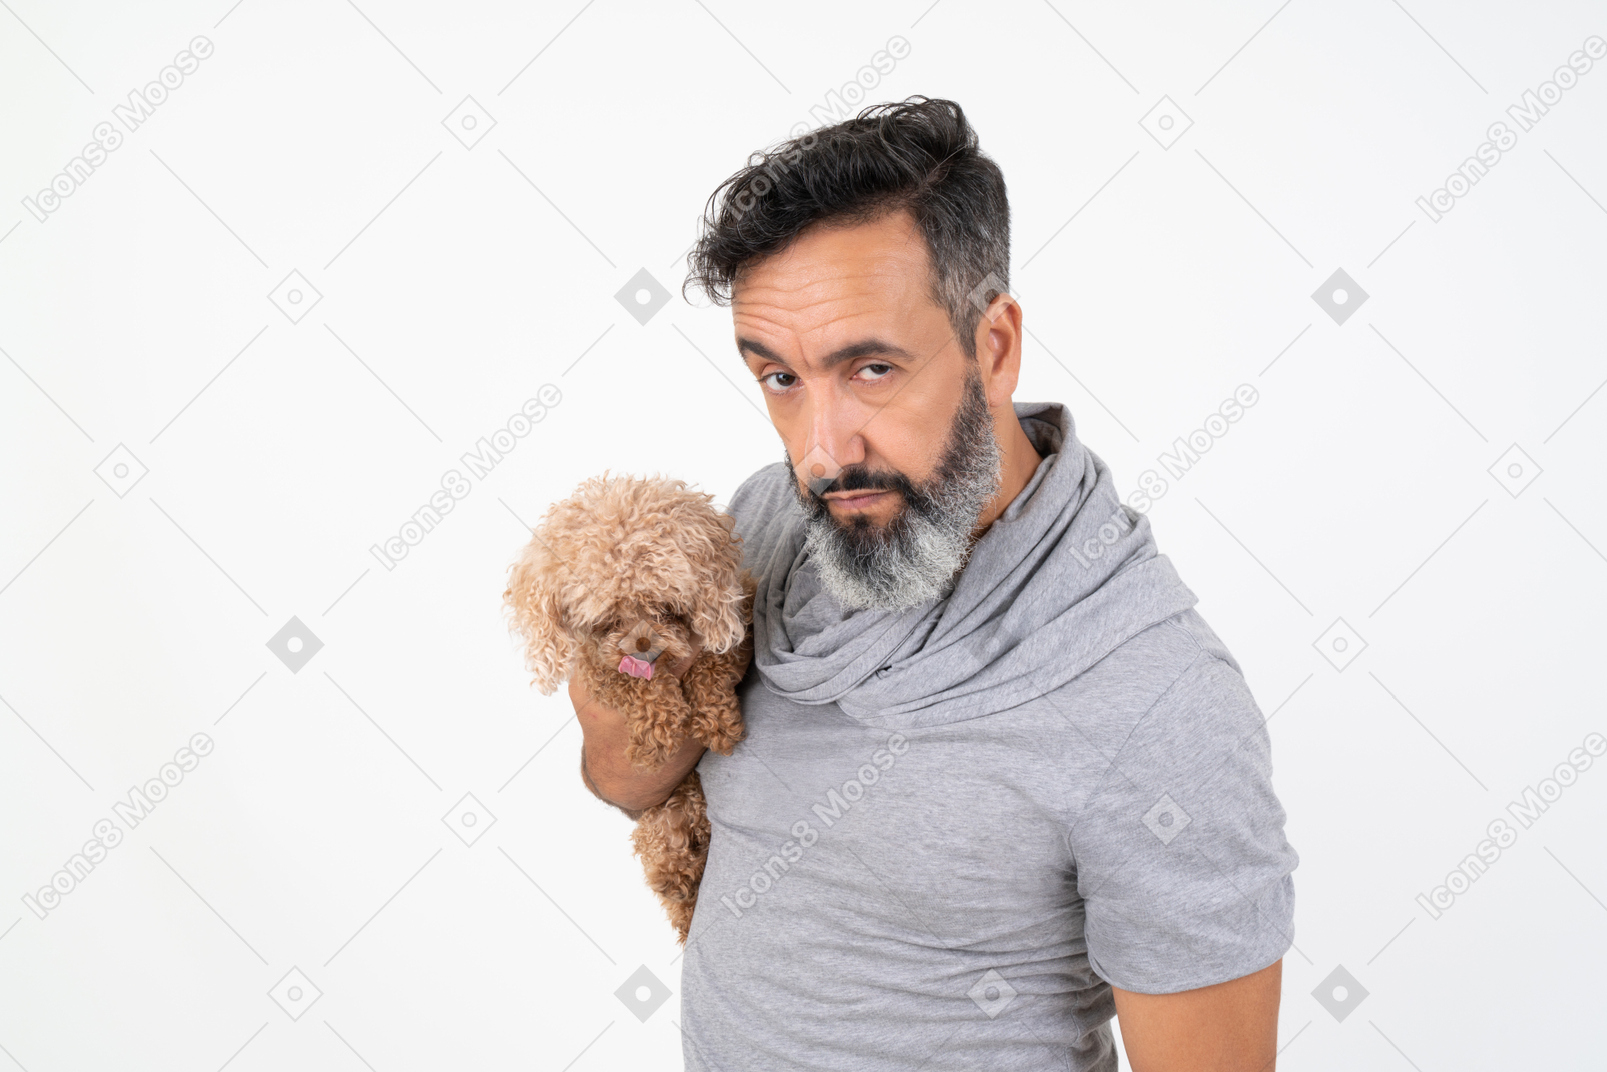 Зрелый мужчина с серьезным лицом держит щенка